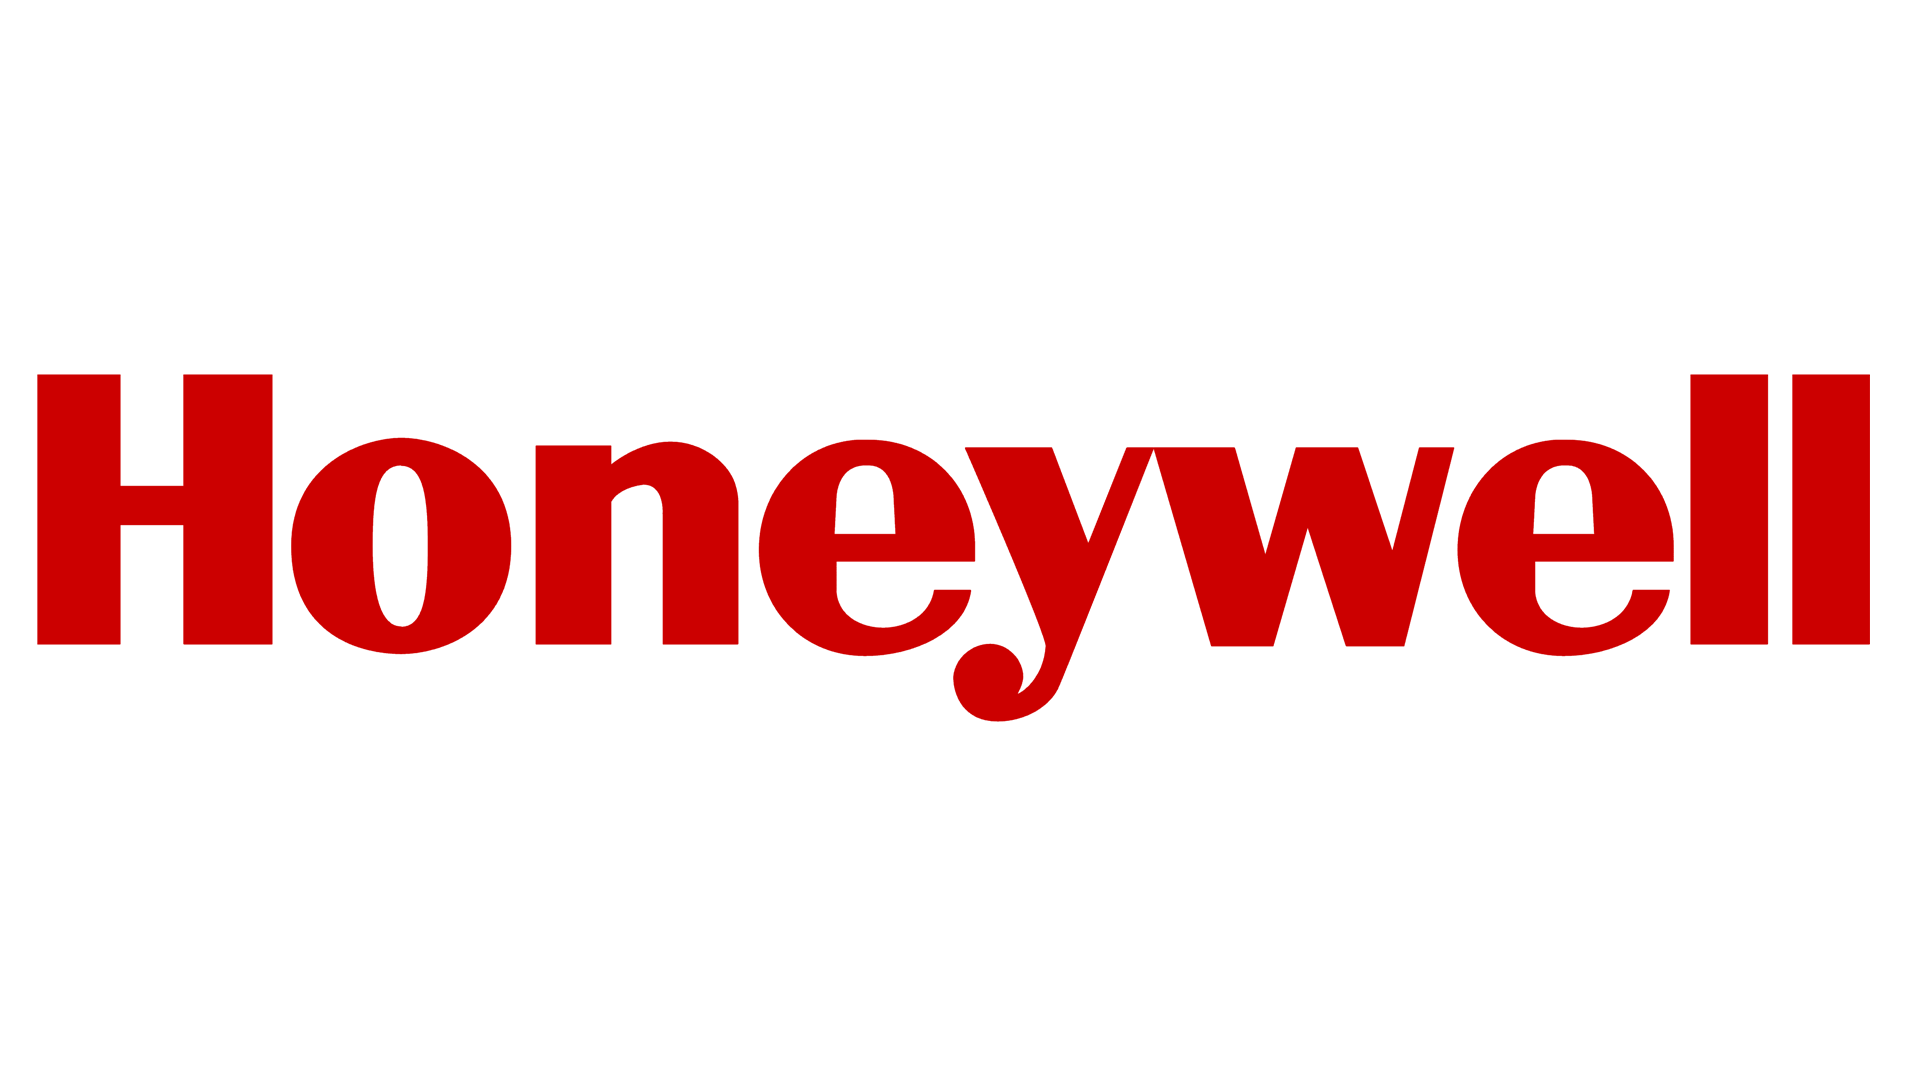 Honeywell Logosu, Honeywell Sembolü, Anlamı, Tarihçesi ve Gelişimi